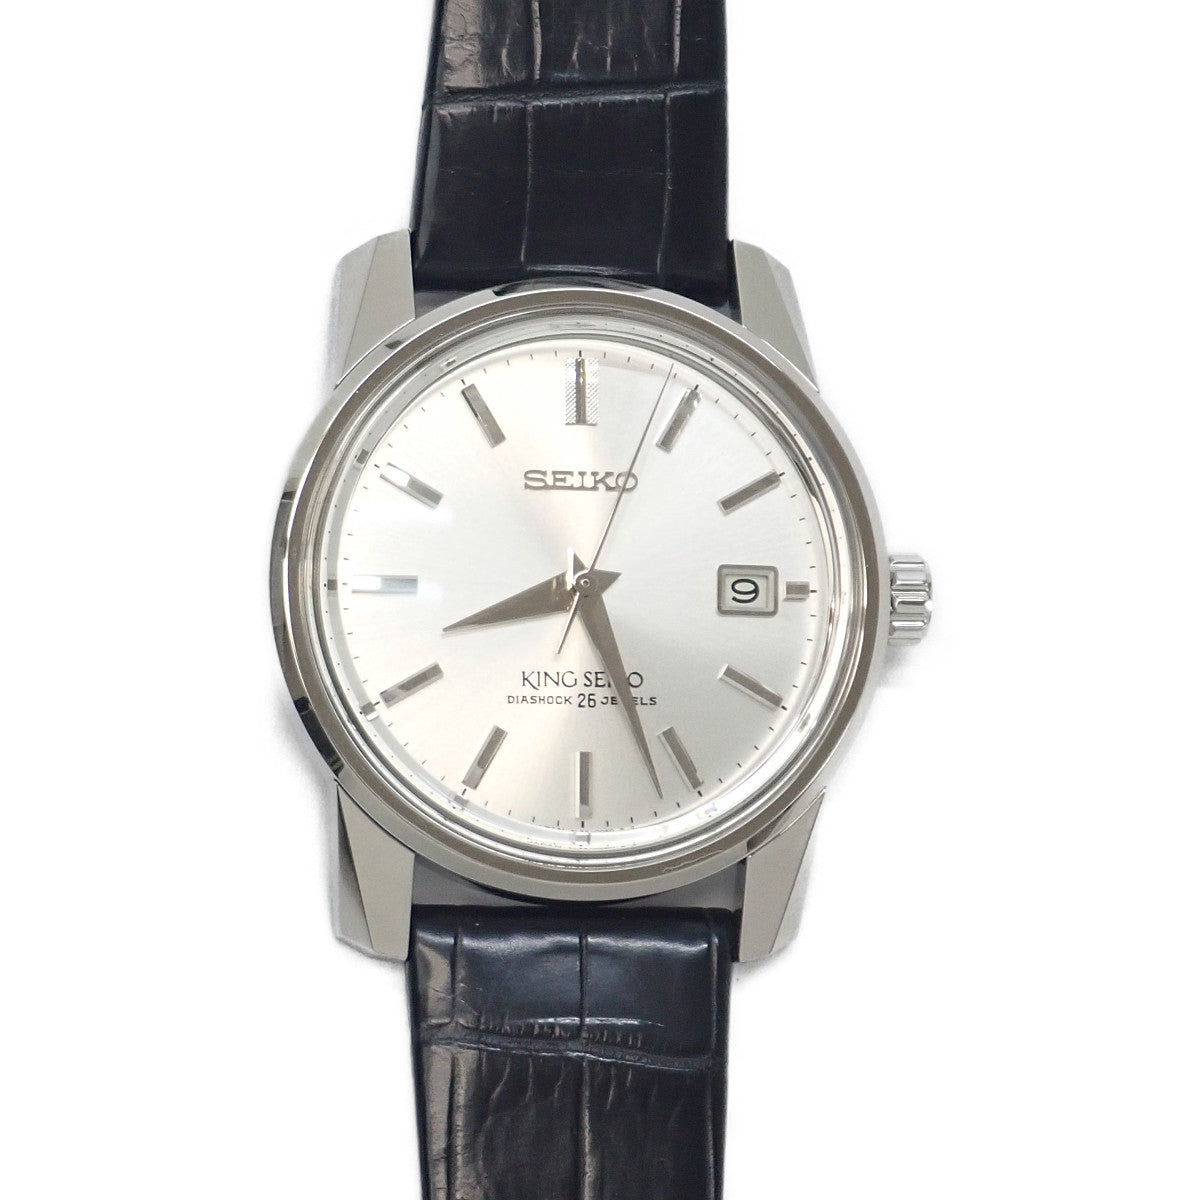 Seiko  SEIKO King Seiko 140th Anniversary Limited Edition Men's Wristwatch, Stainless Steel, SEIKO Used SDKA001 in Excellent condition